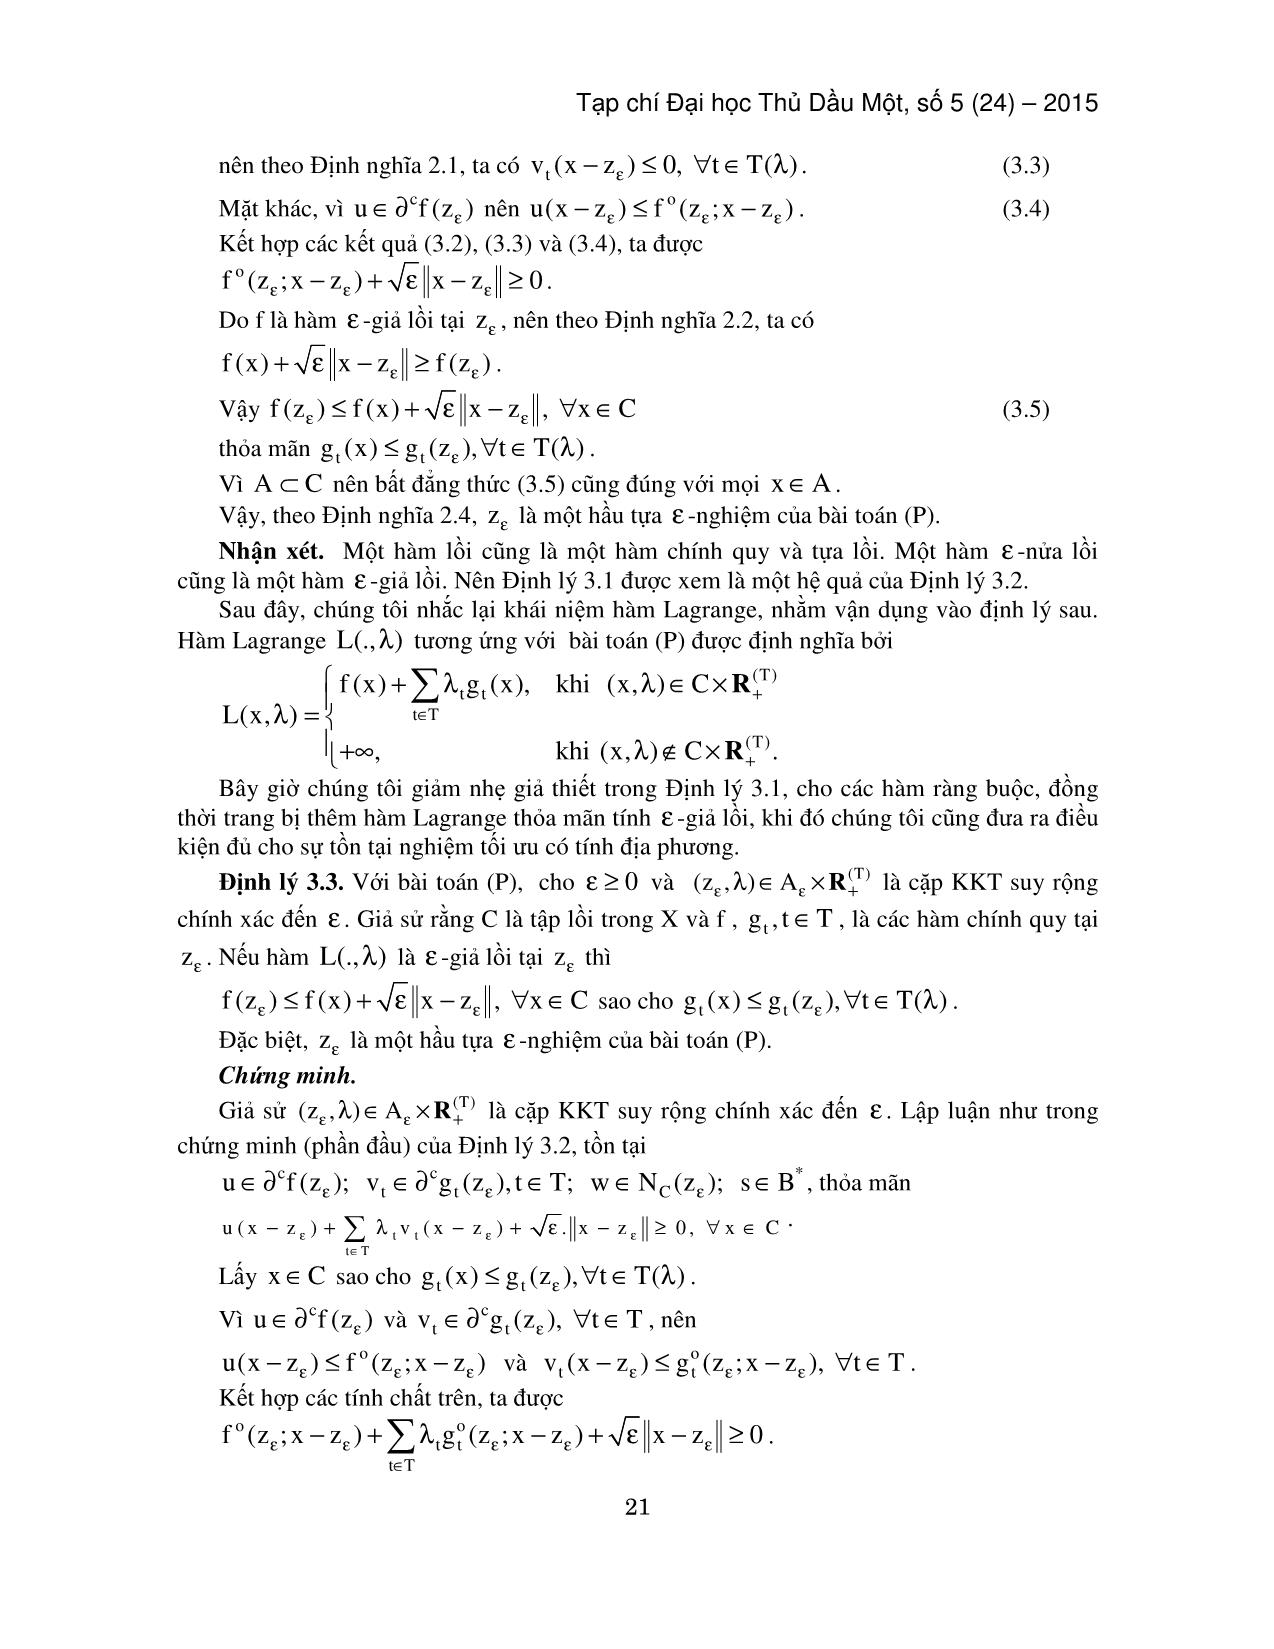 Ðiều kiện tối ưu cho hầu tựa ε-nghiệm của bài toán tối ưu không lồi với vô hạn ràng buộc trang 5